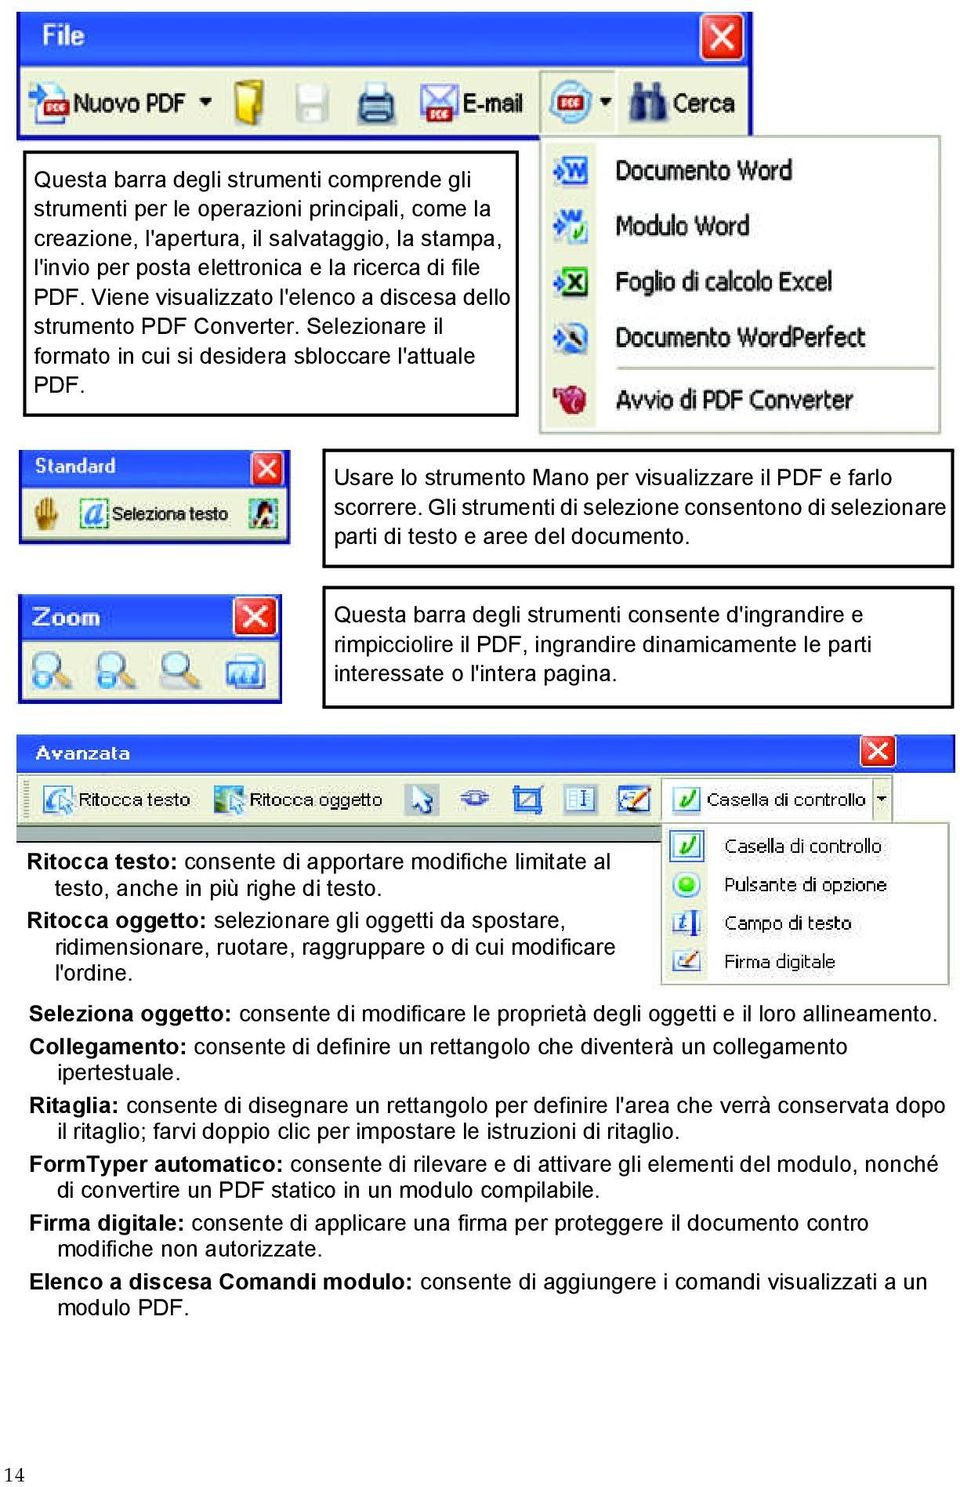 Usare lo strumento Mano per visualizzare il PDF e farlo scorrere. Gli strumenti di selezione consentono di selezionare parti di testo e aree del documento.